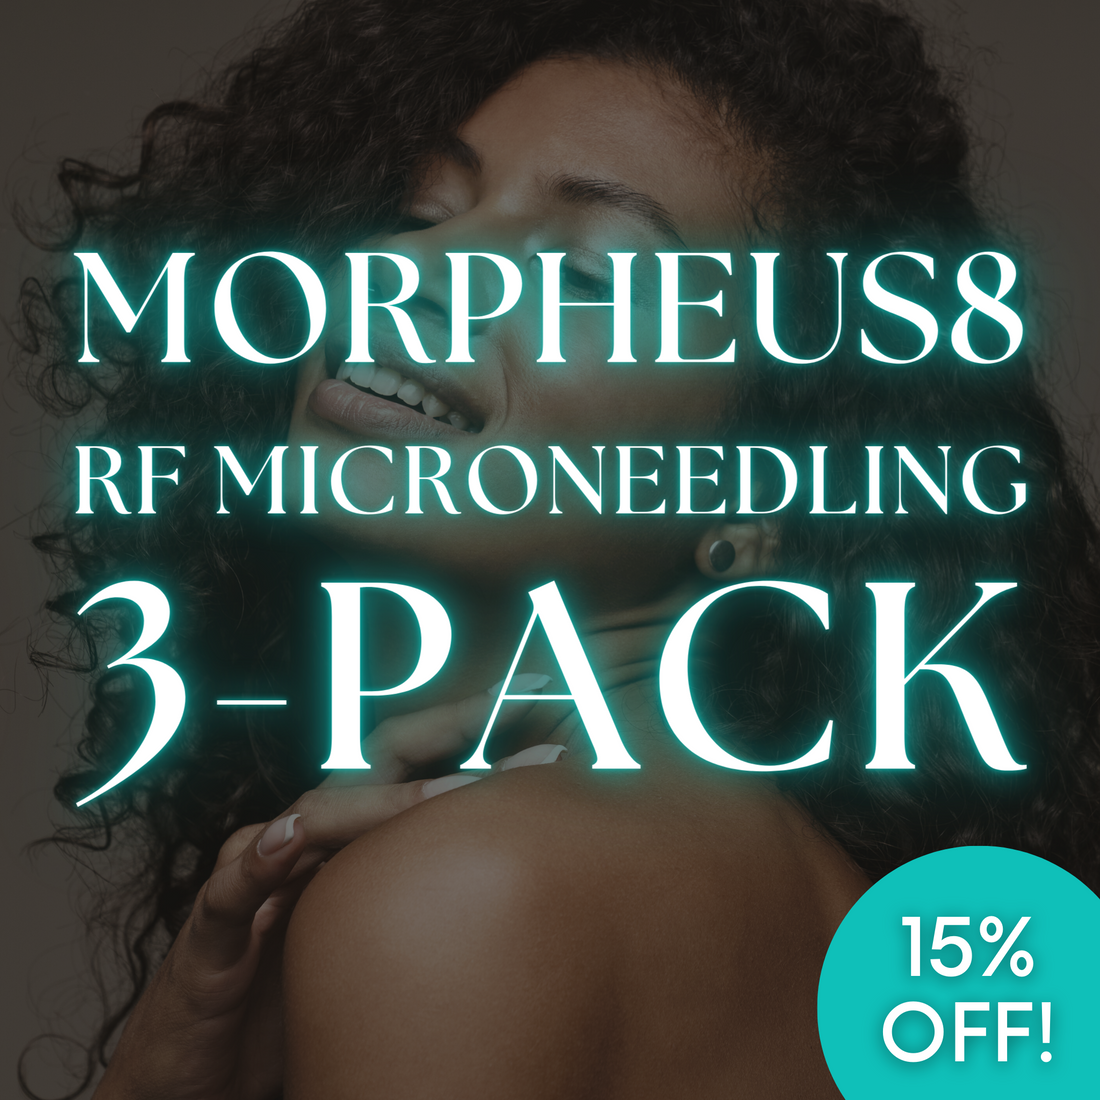 Morpheus8 RF Microneedling: 3-Pack for Face